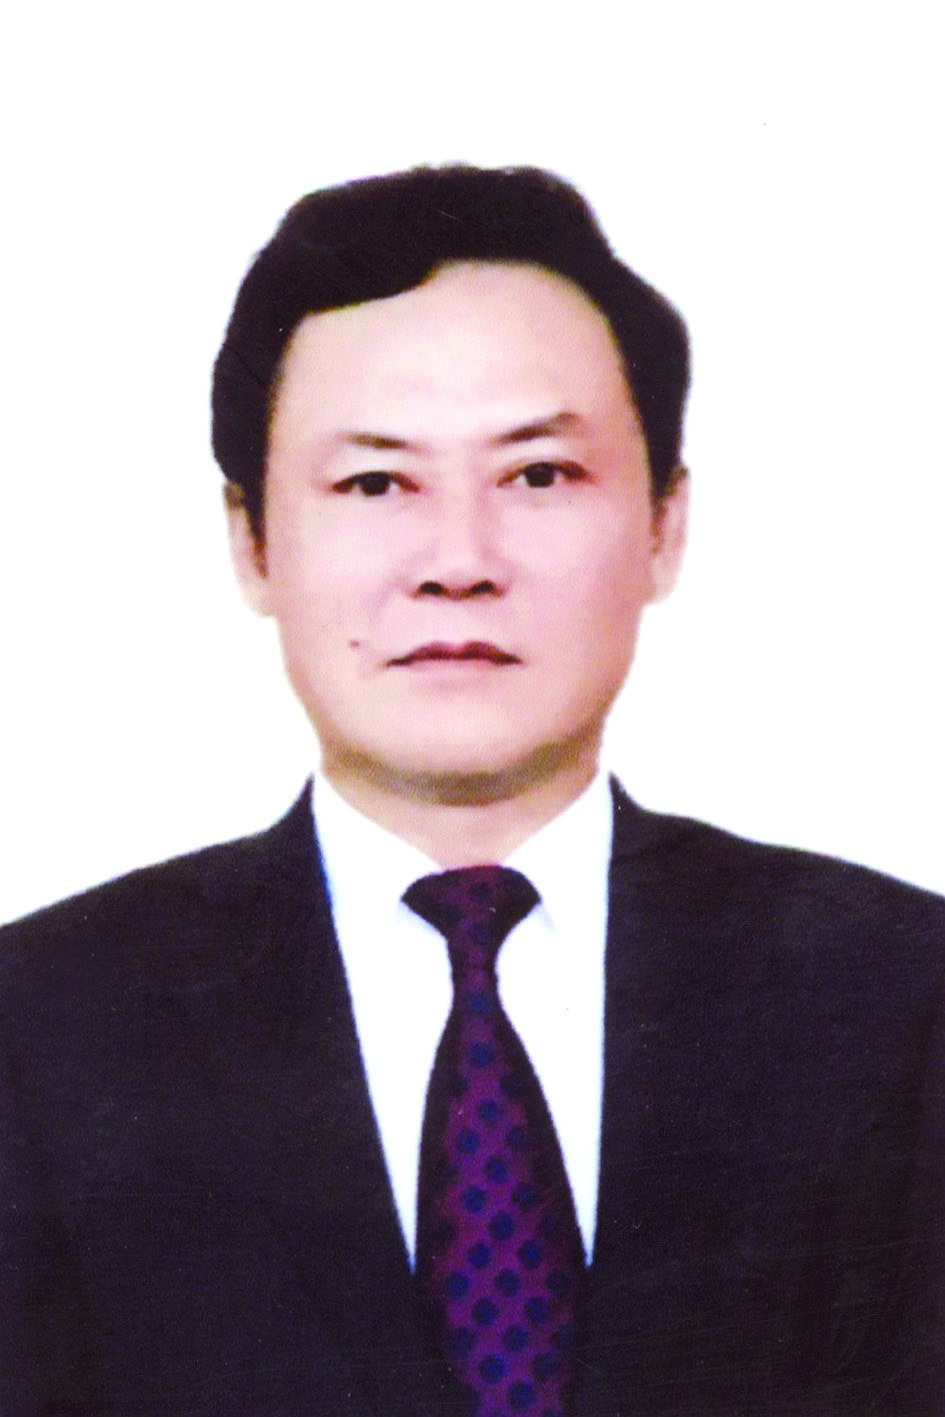 Chương trình hành động của Bí thư Huyện ủy, Chủ tịch UBND huyện Gia Lâm Lê Anh Quân, ứng cử viên đại biểu HĐND TP Hà Nội nhiệm kỳ 2021 - 2026 - Ảnh 1